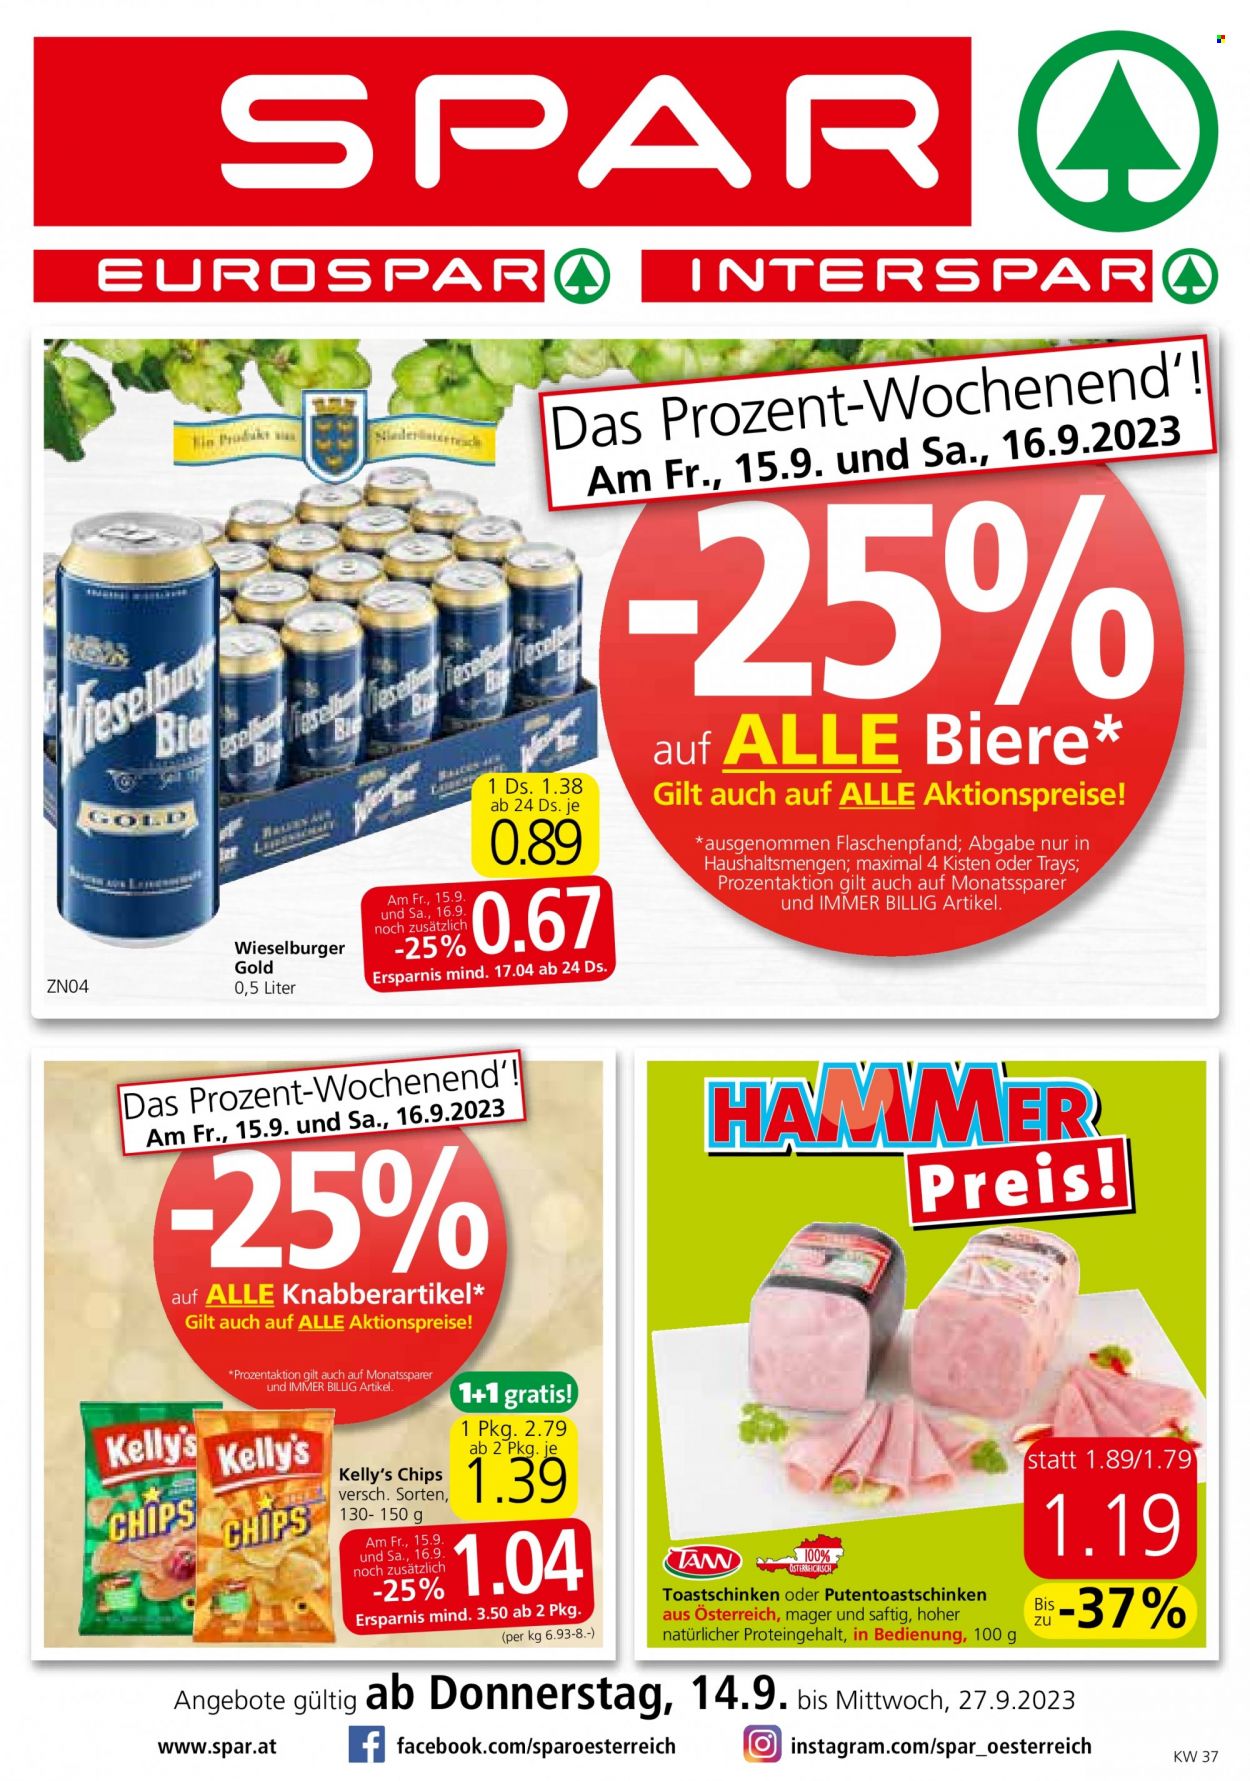 Angebote SPAR - 14.9.2023 - 27.9.2023 - Verkaufsprodukte - Schinken, Toastschinken, Chips, Kelly‘s, Wieselburger Gold, Alkohol, Bier, Wieselburger. Seite 1.